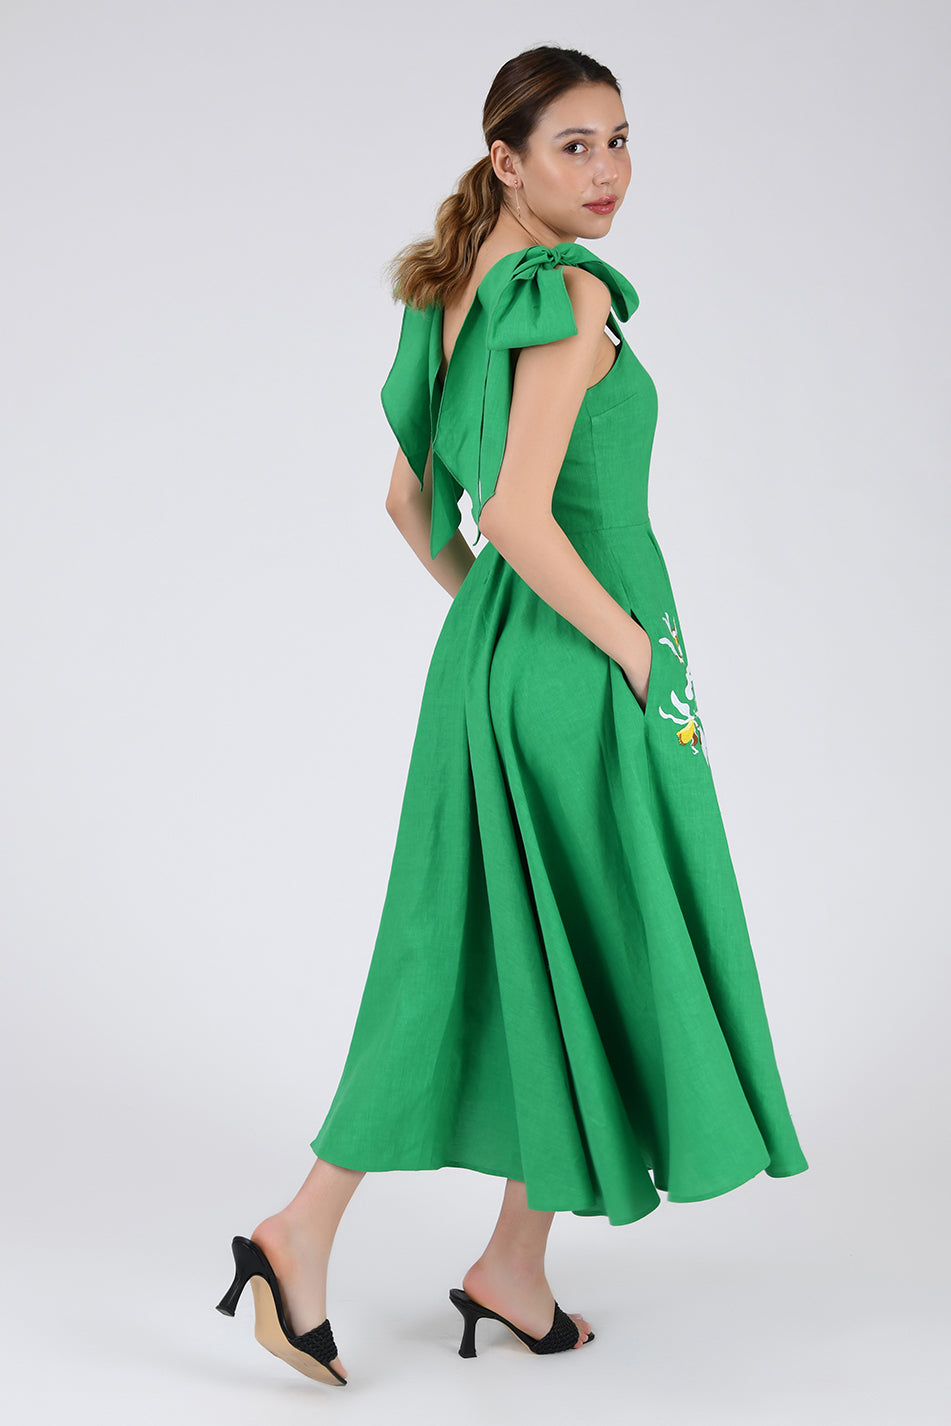 Side View of the Nilen Dress by Fanm Mon in Kelly Green